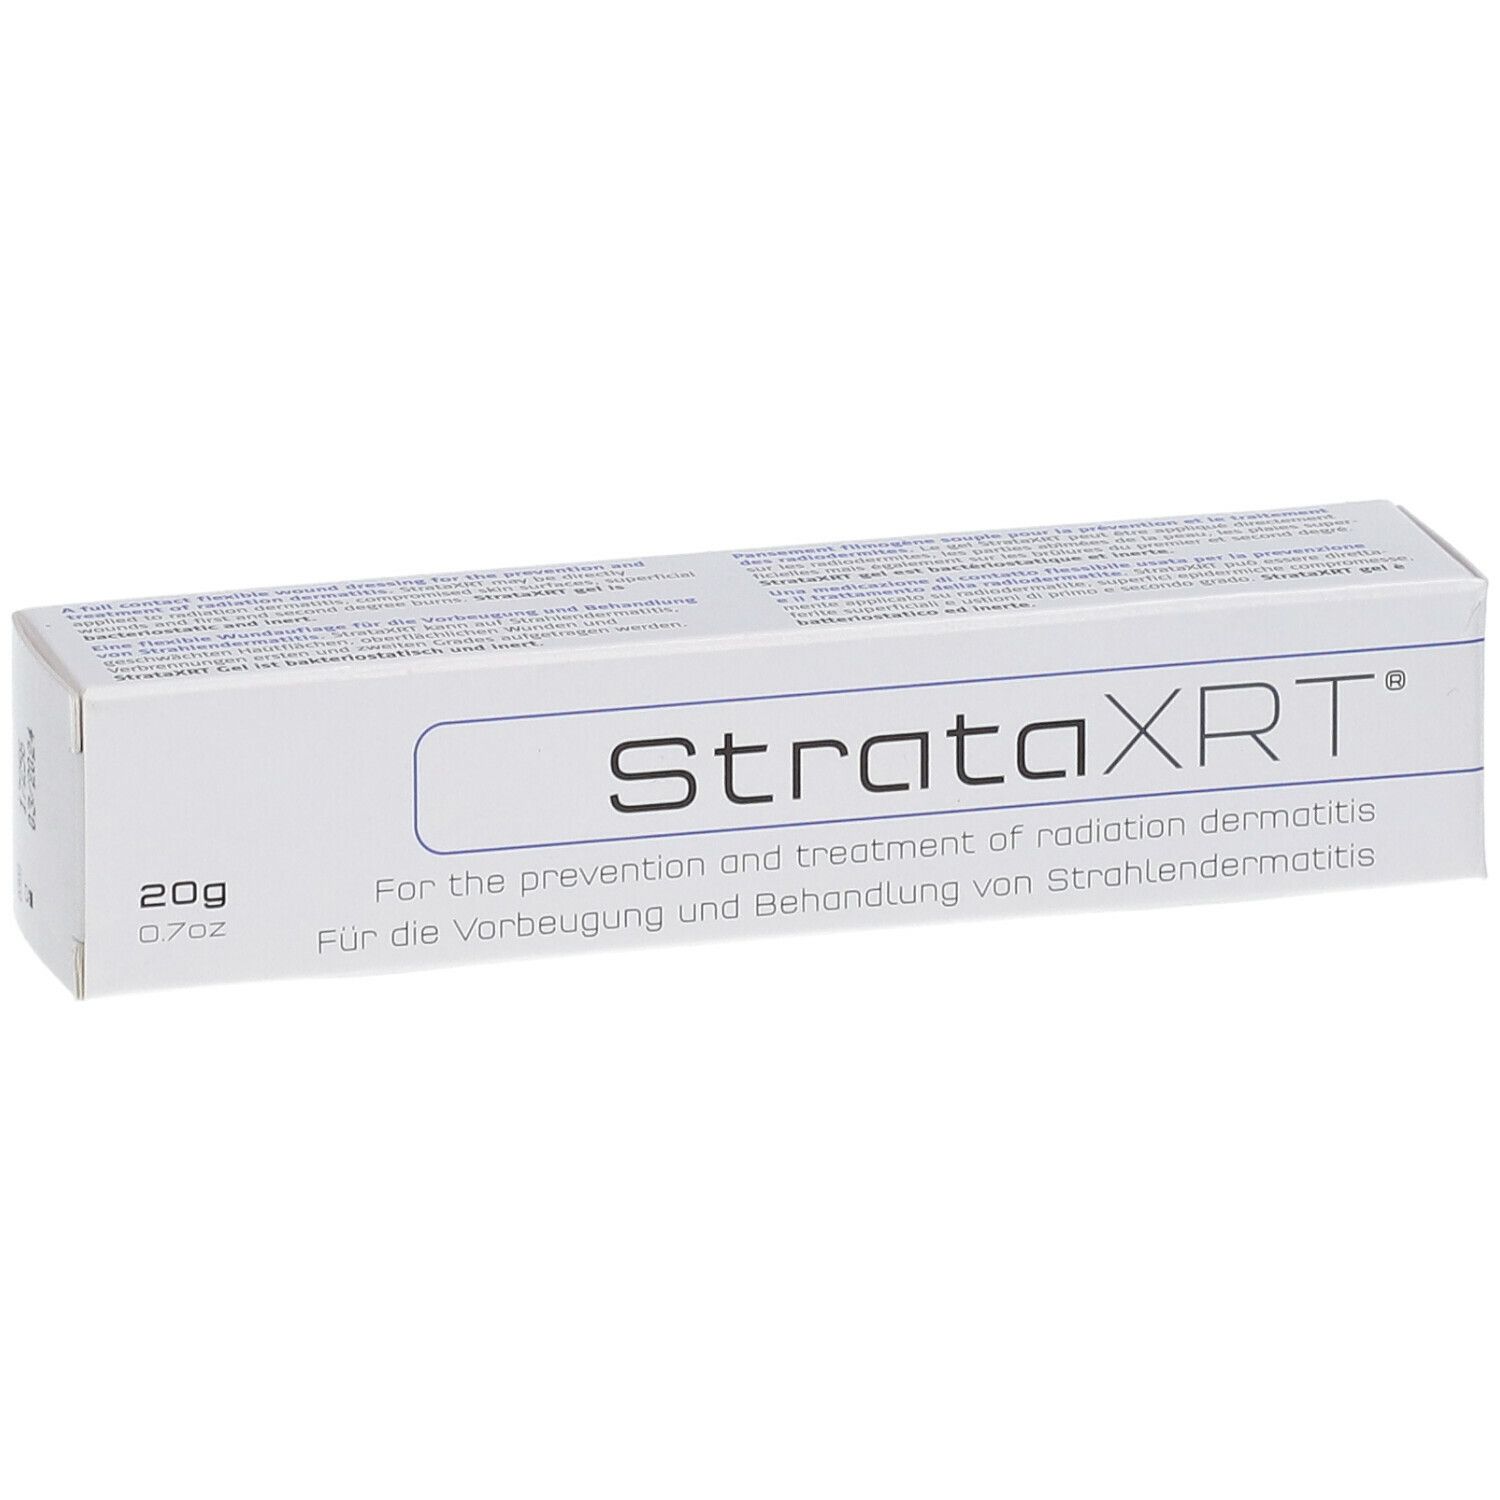 StrataXRT®